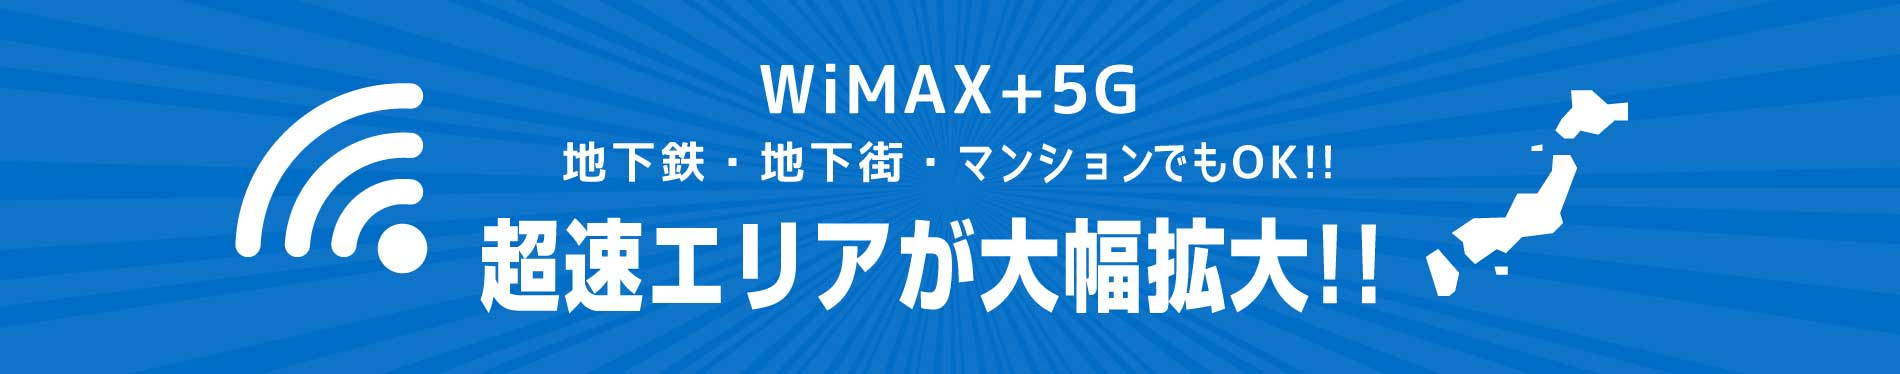 WiMAX+5G 対応エリア拡大中